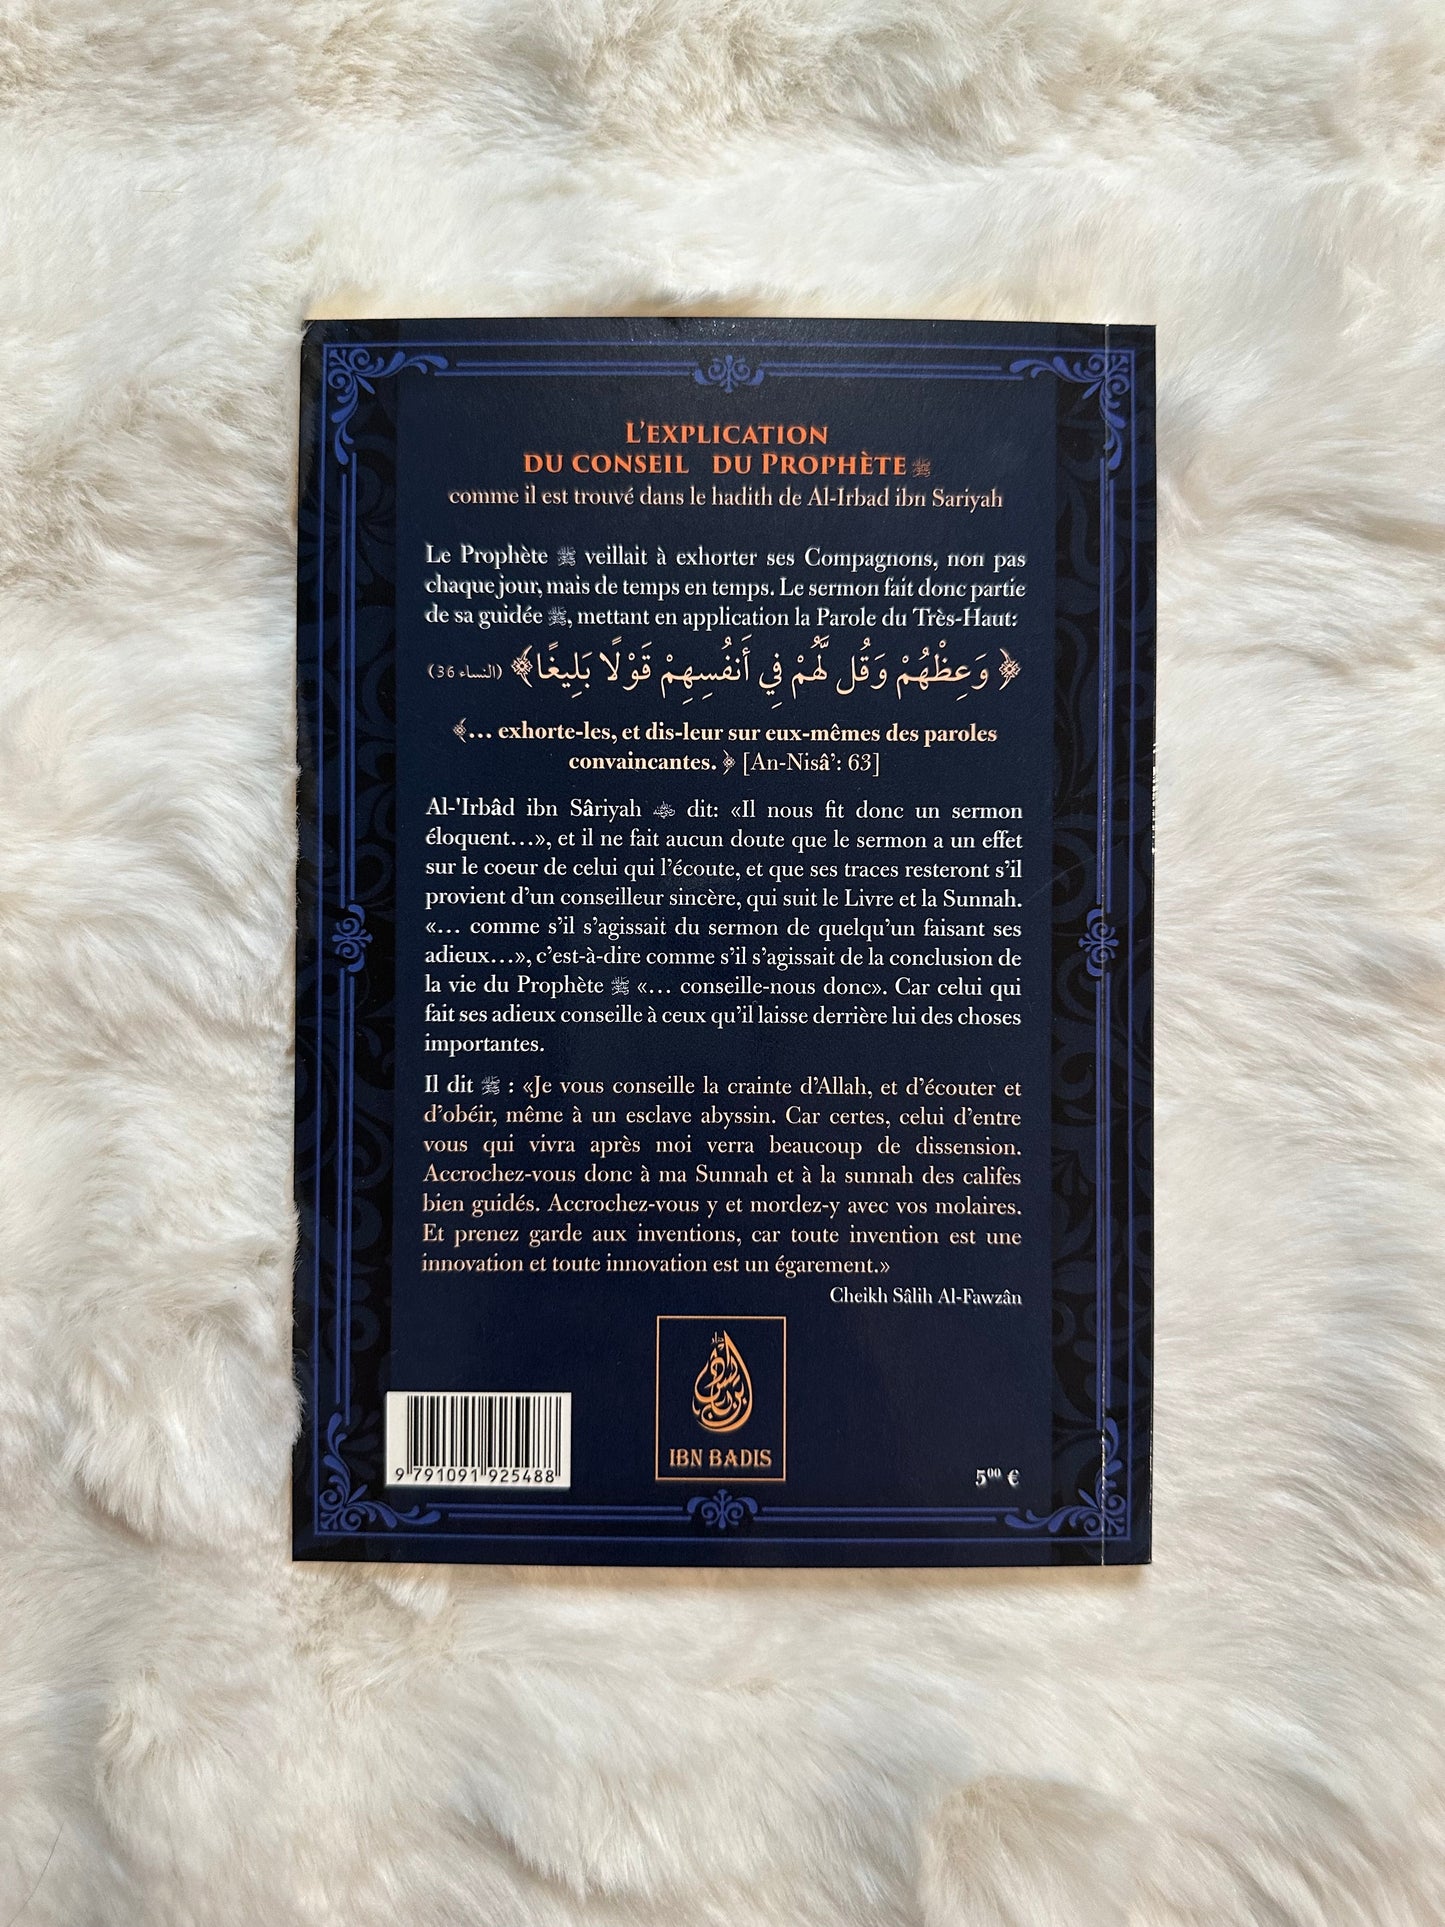 L'explication Du Conseil Du Prophète (Comme Il Est Trouvé Dans Le Hadith De Al-Irabad Ibn Sariyah), De Sâlih Al-Fawzân